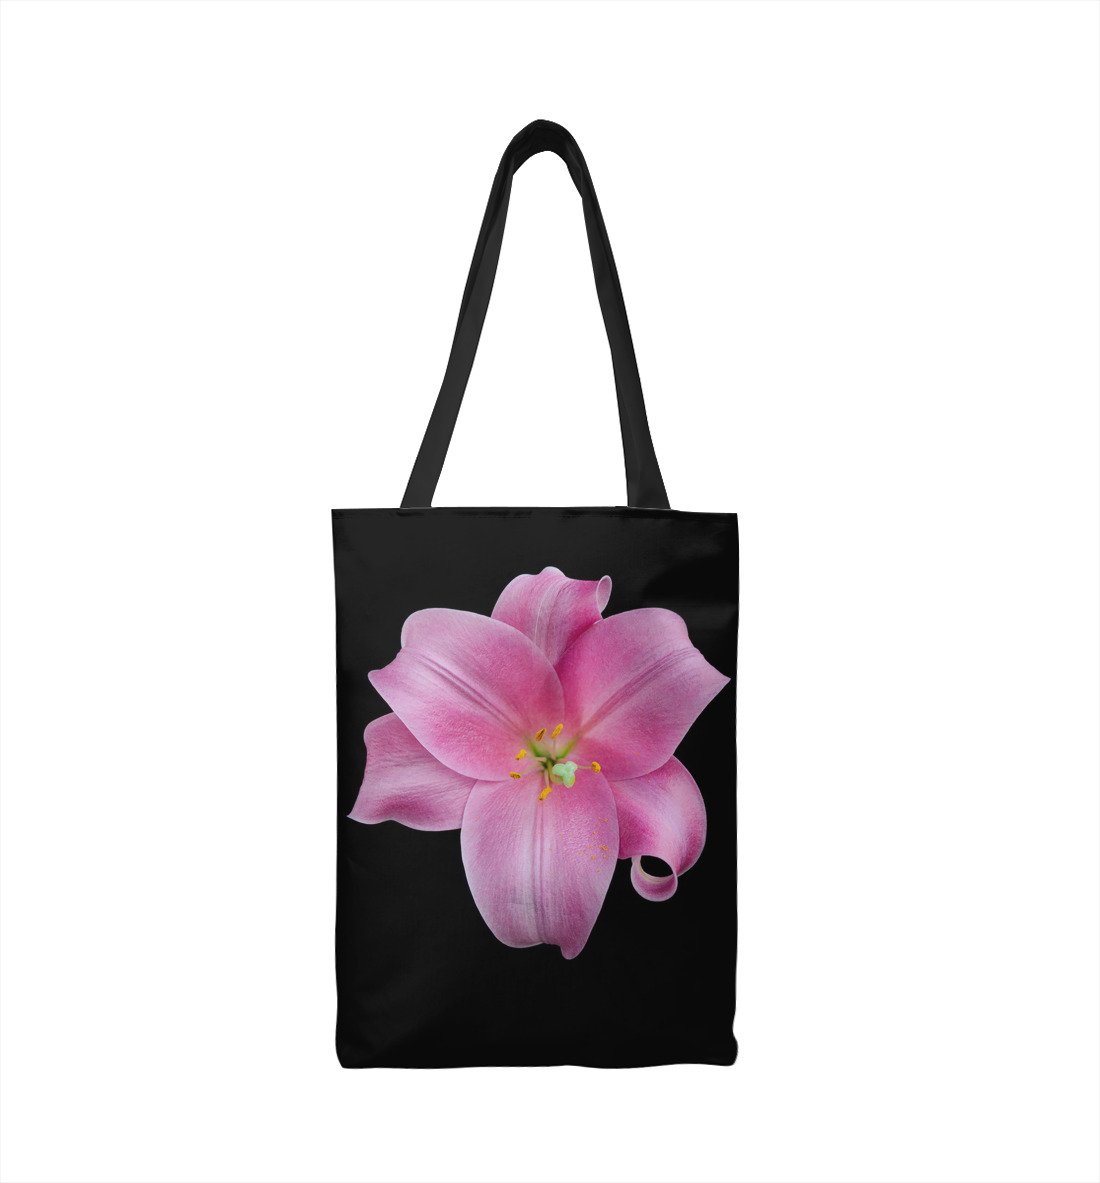 Купить Сумка-шоппер Розовый цветок, артикул CVE-813547-susmp